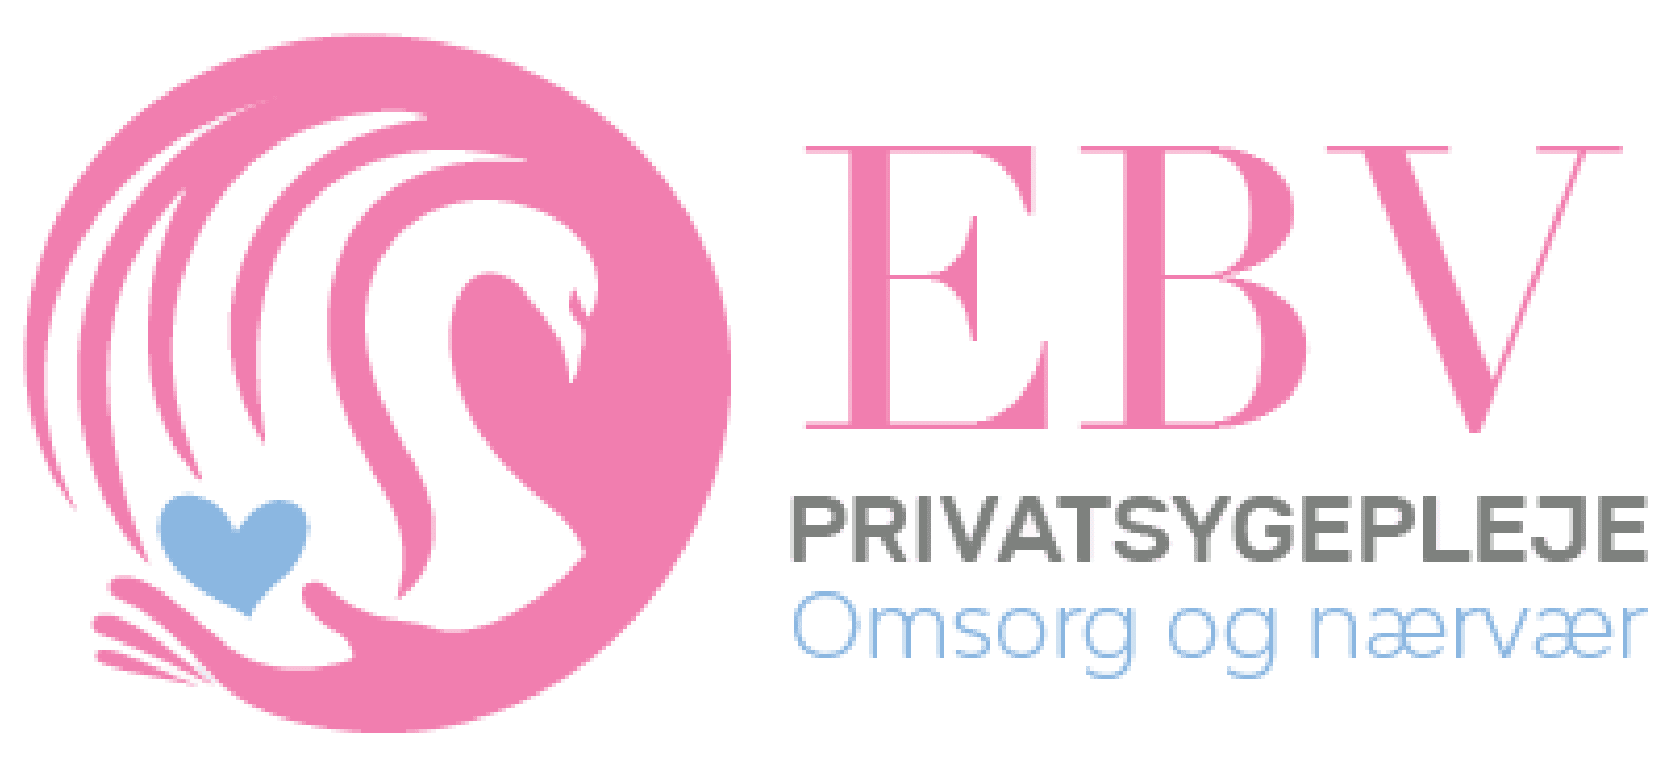 EBV privat sygepleje